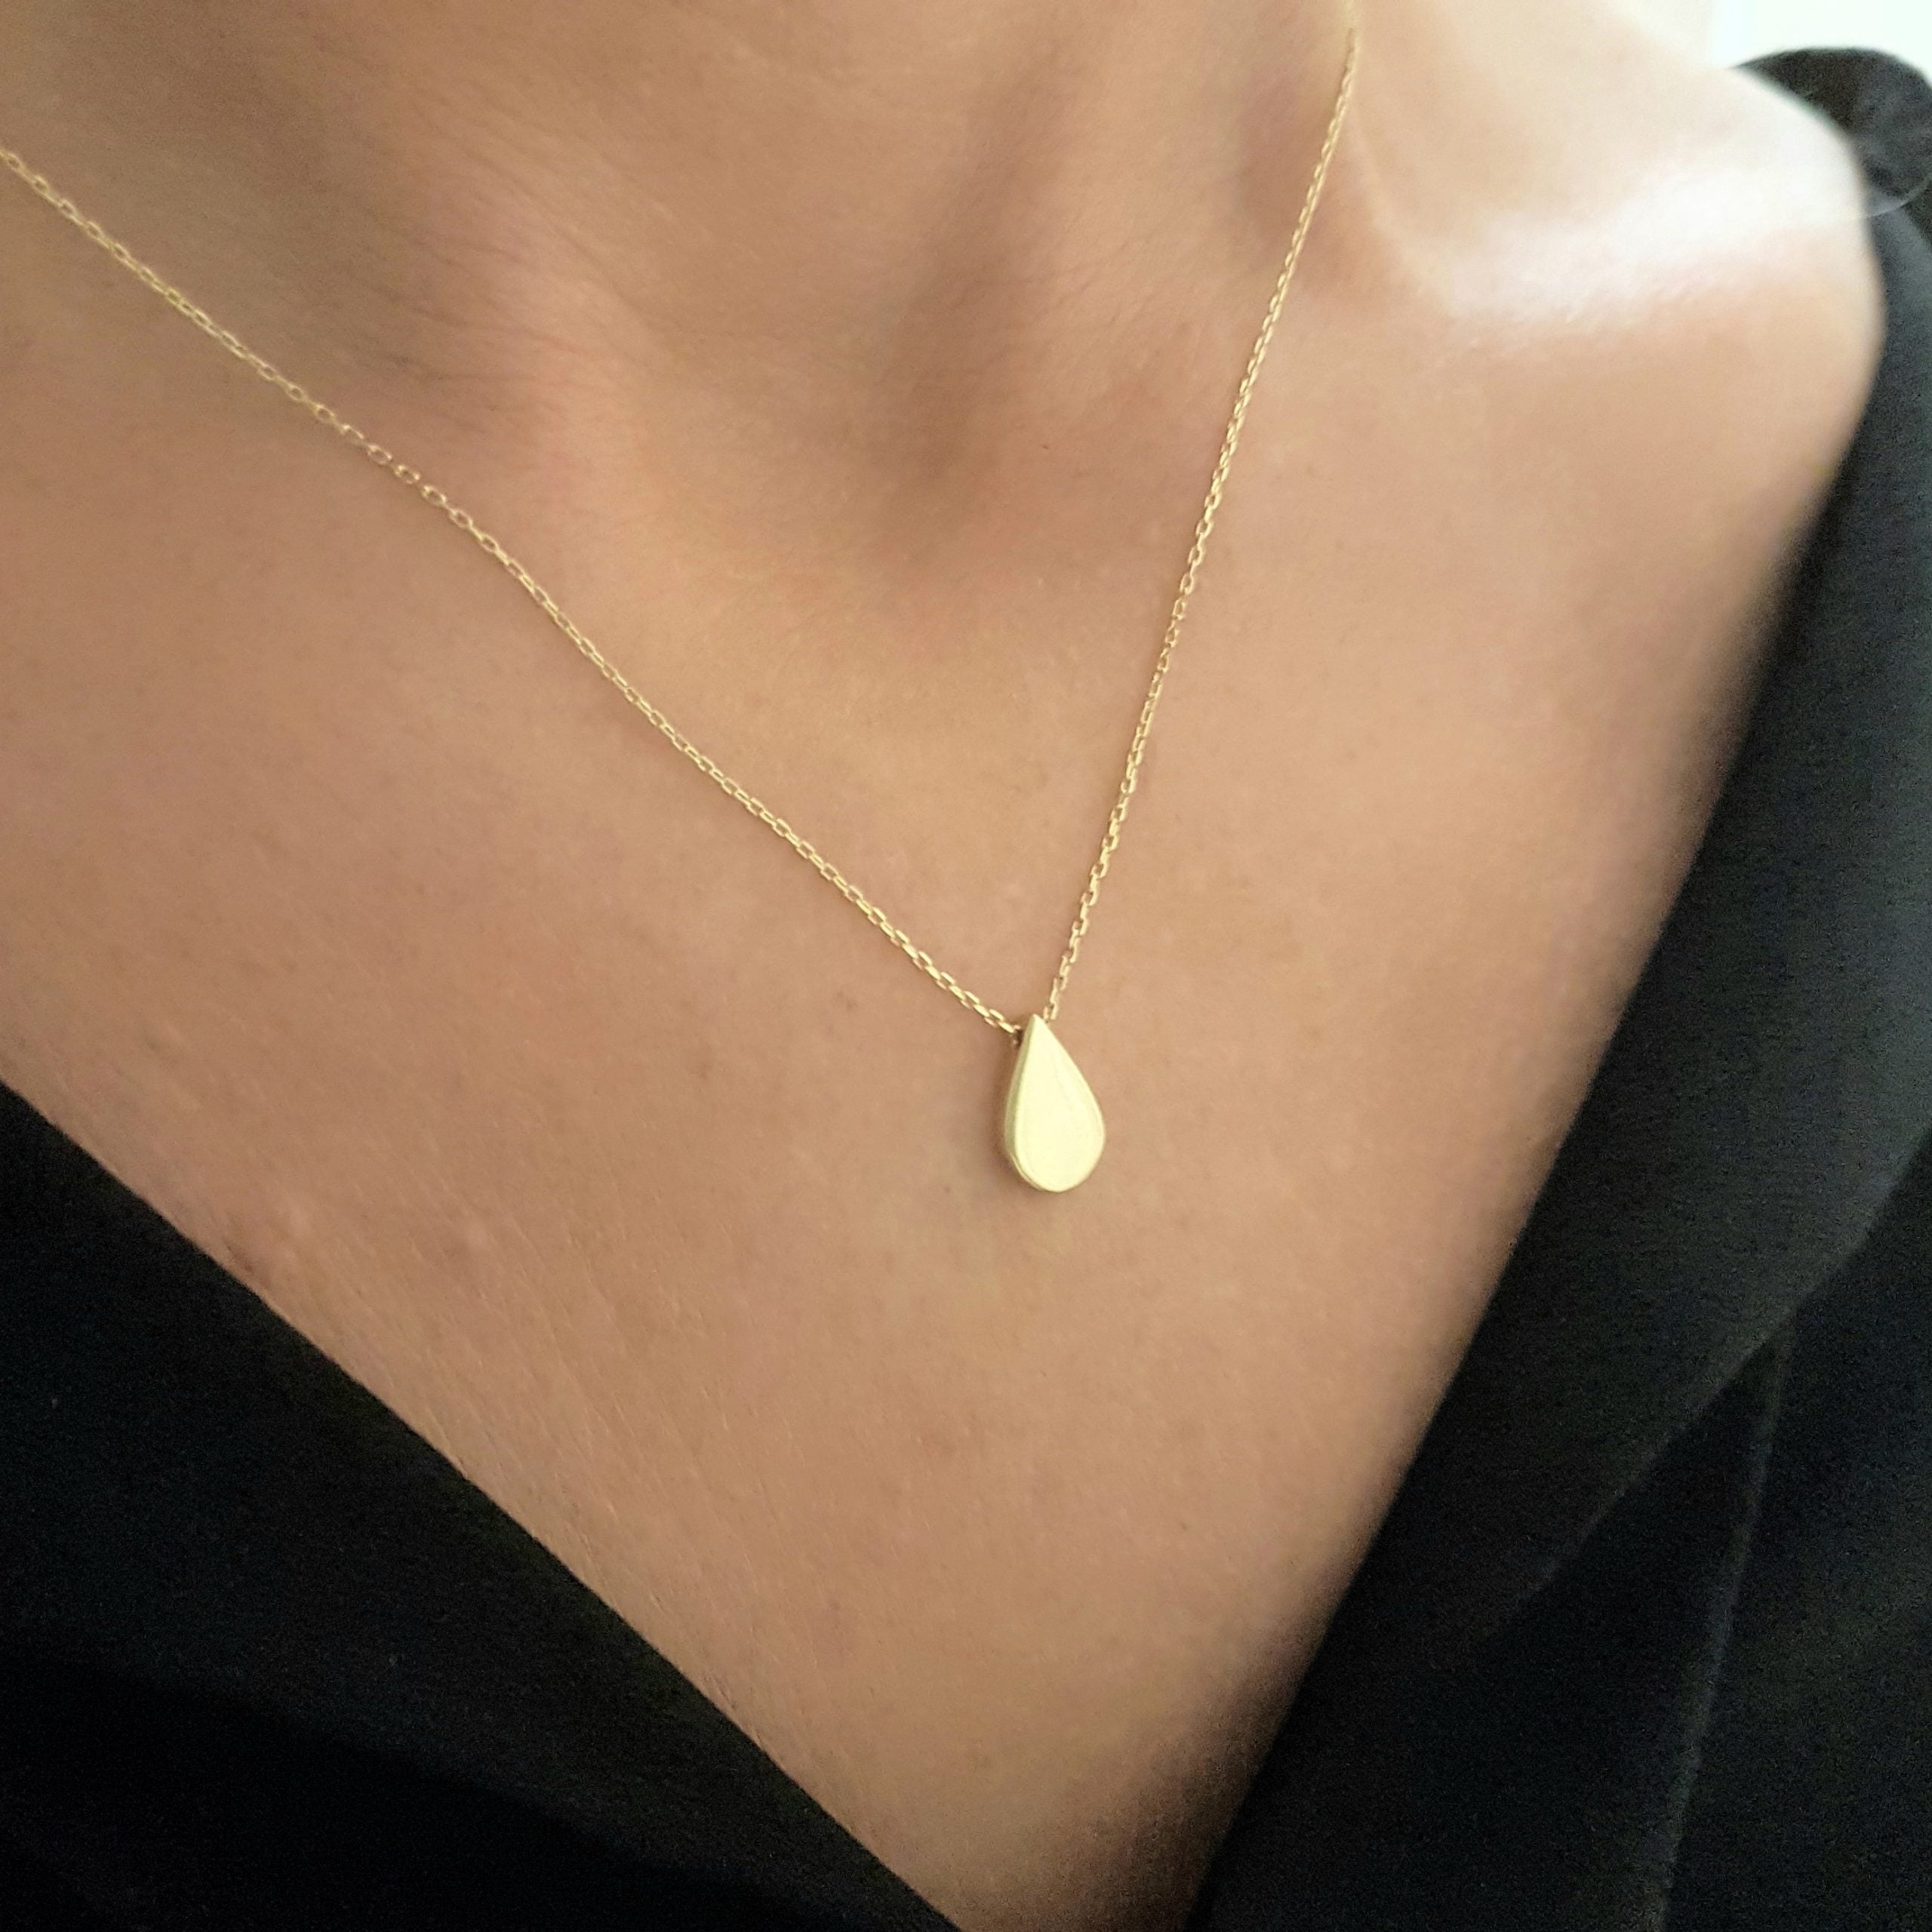 Gold Necklace Gift Arthatravel Com